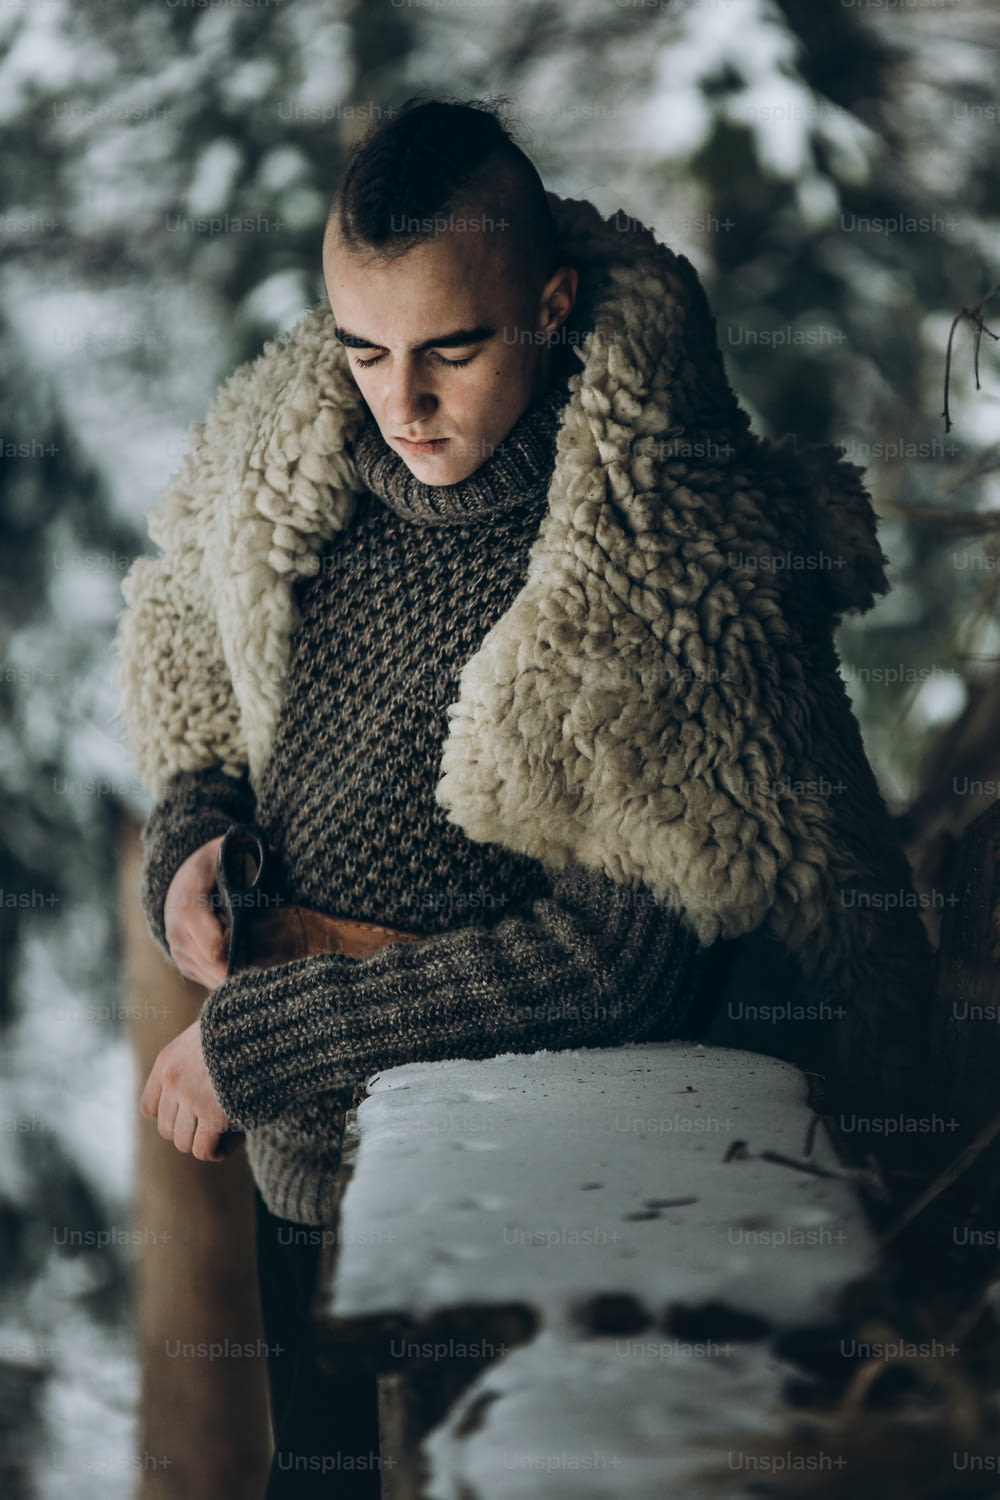 guerreiro viking com machado de aço posando perto de cabana de madeira na floresta de inverno escandinava, cosplay viking thor, traje tradicional da Noruega, homem bonito com penteado moicano em pé ao ar livre